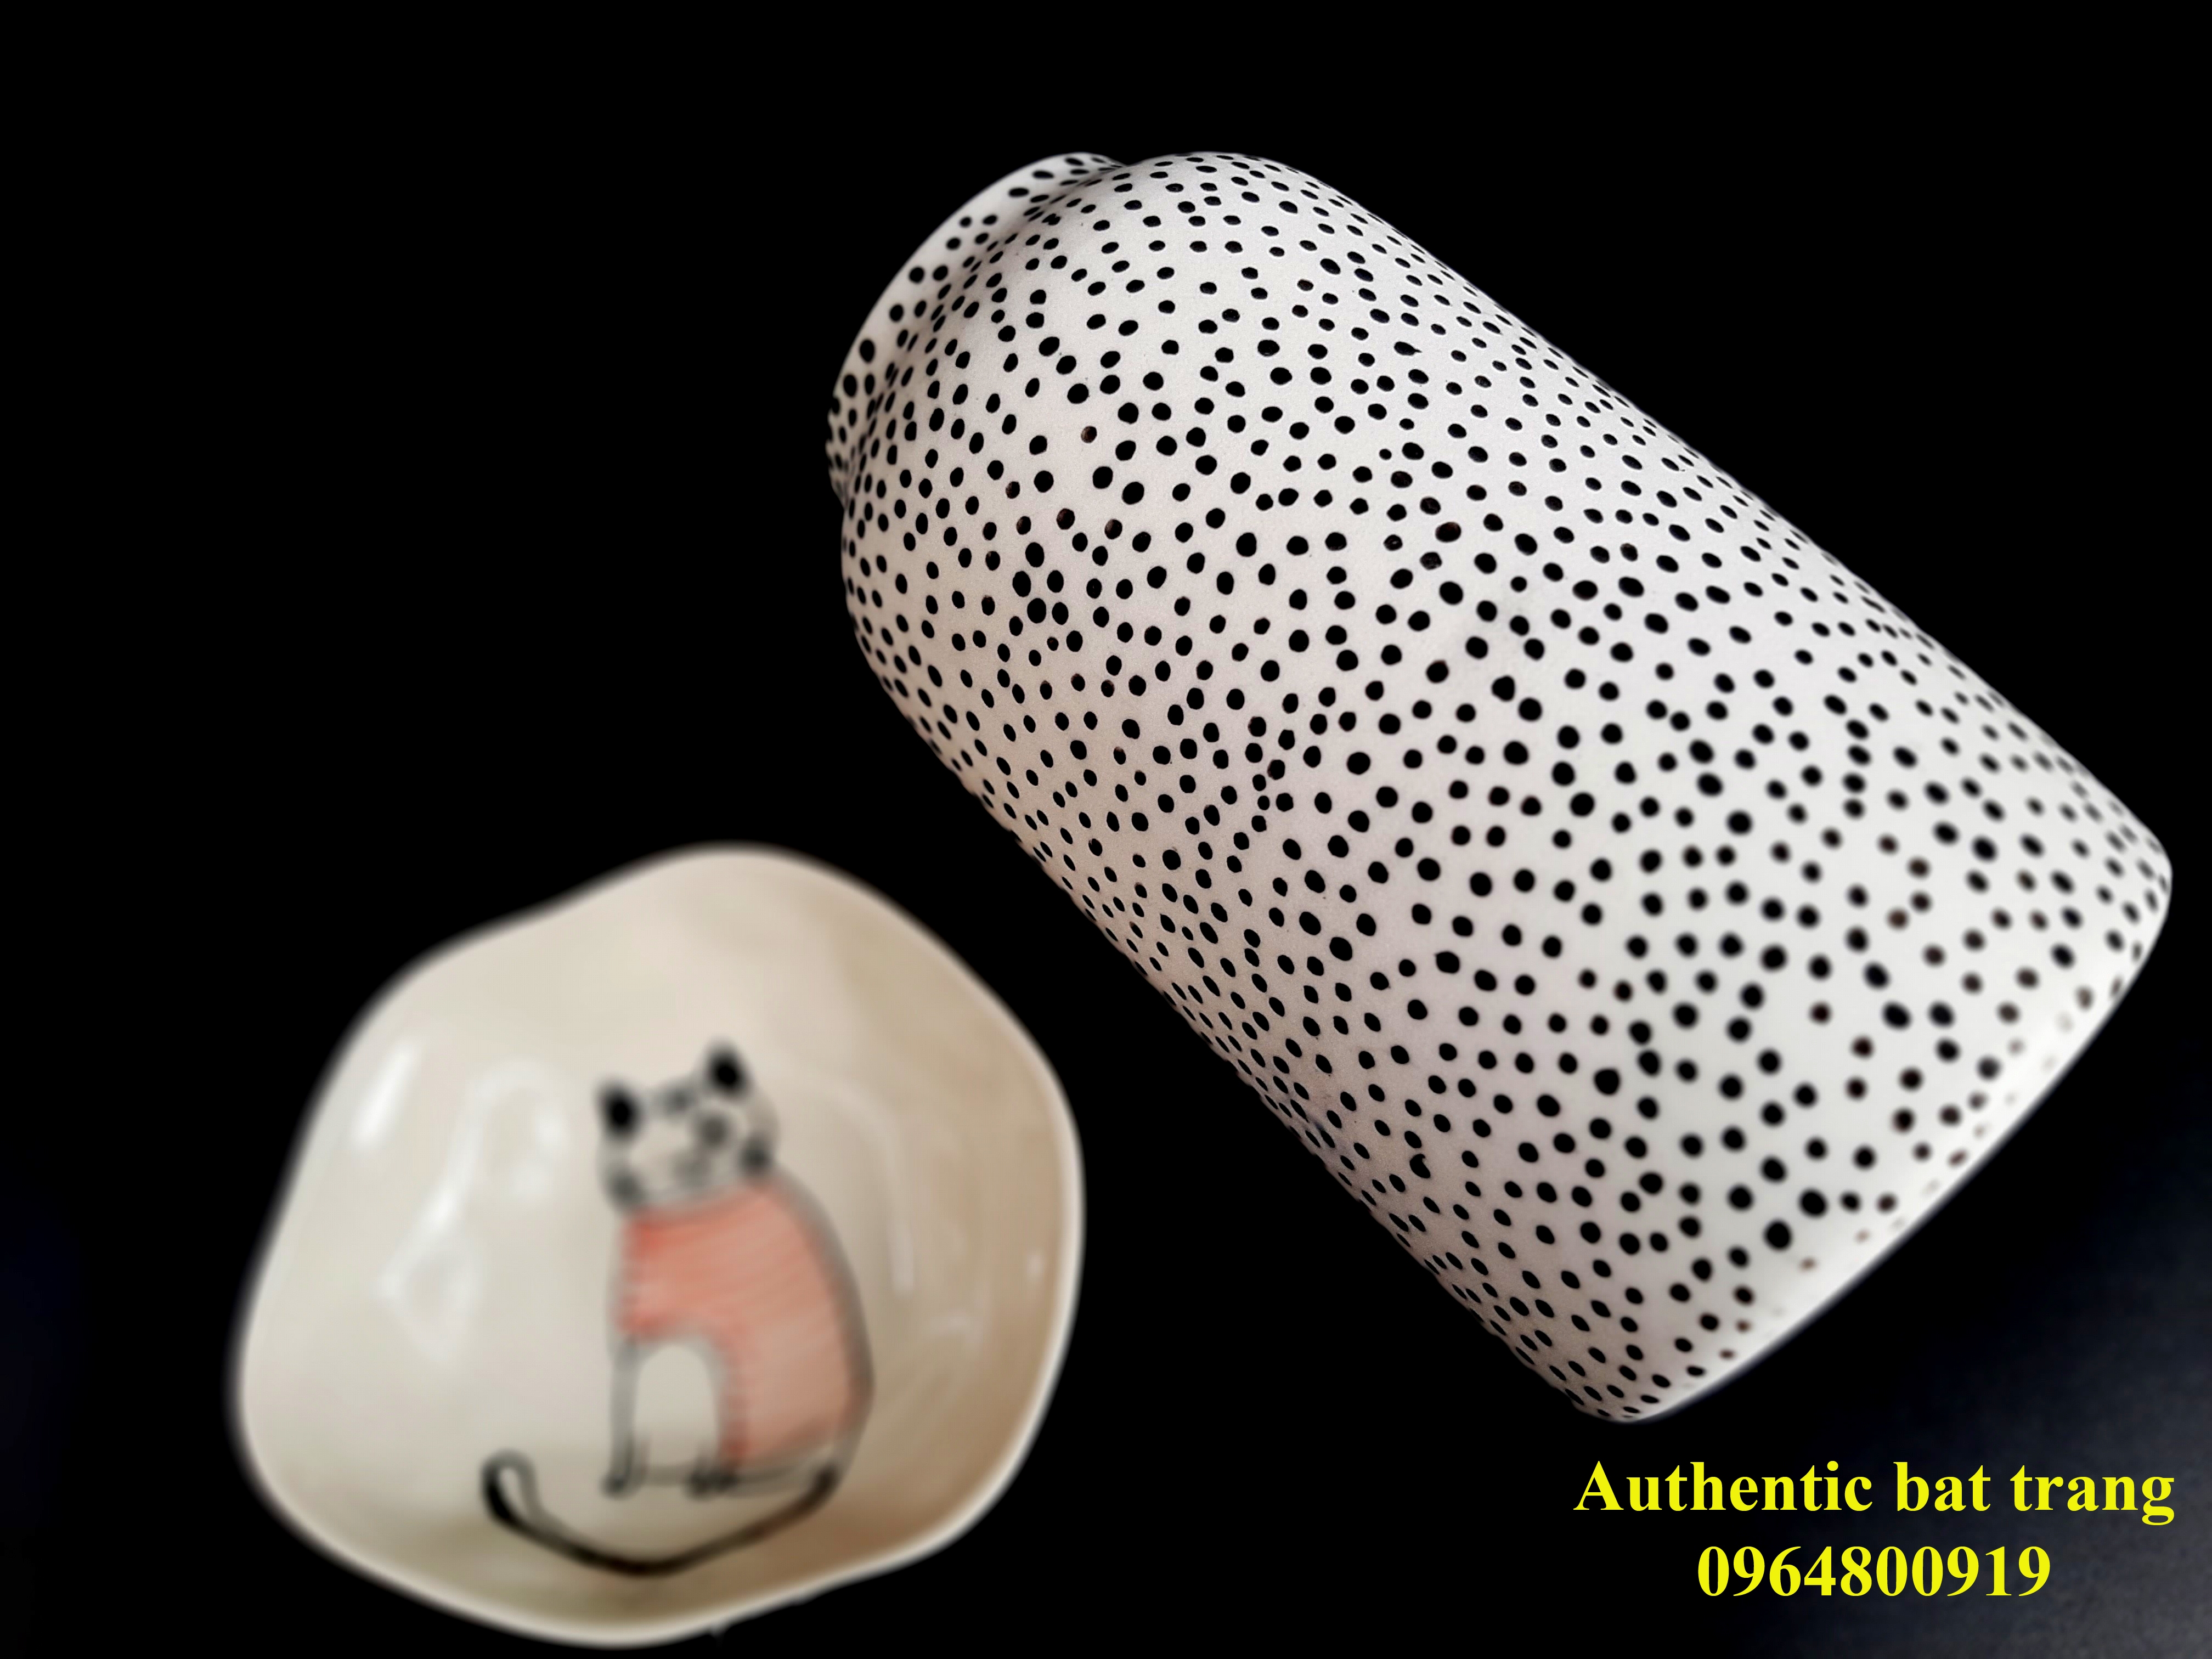 this vase was made by authentic bat trang ceramis/ lọ hoa này được sản xuất tại xưởng authentic bat trang